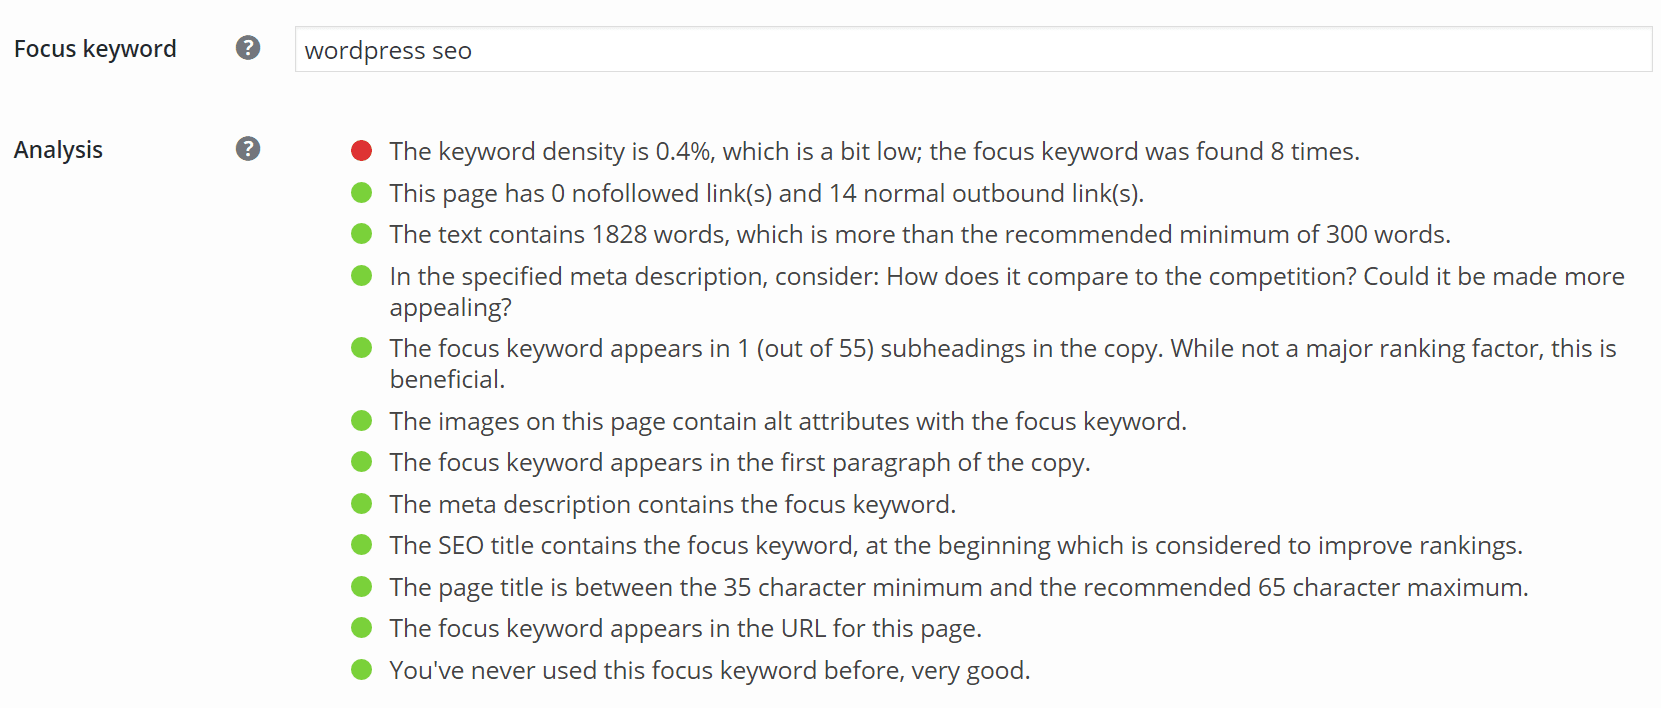 Дополнения SEA (например, Yoast) могут анализировать ваш контент по этому ключевому слову и сообщать, достаточно ли этого